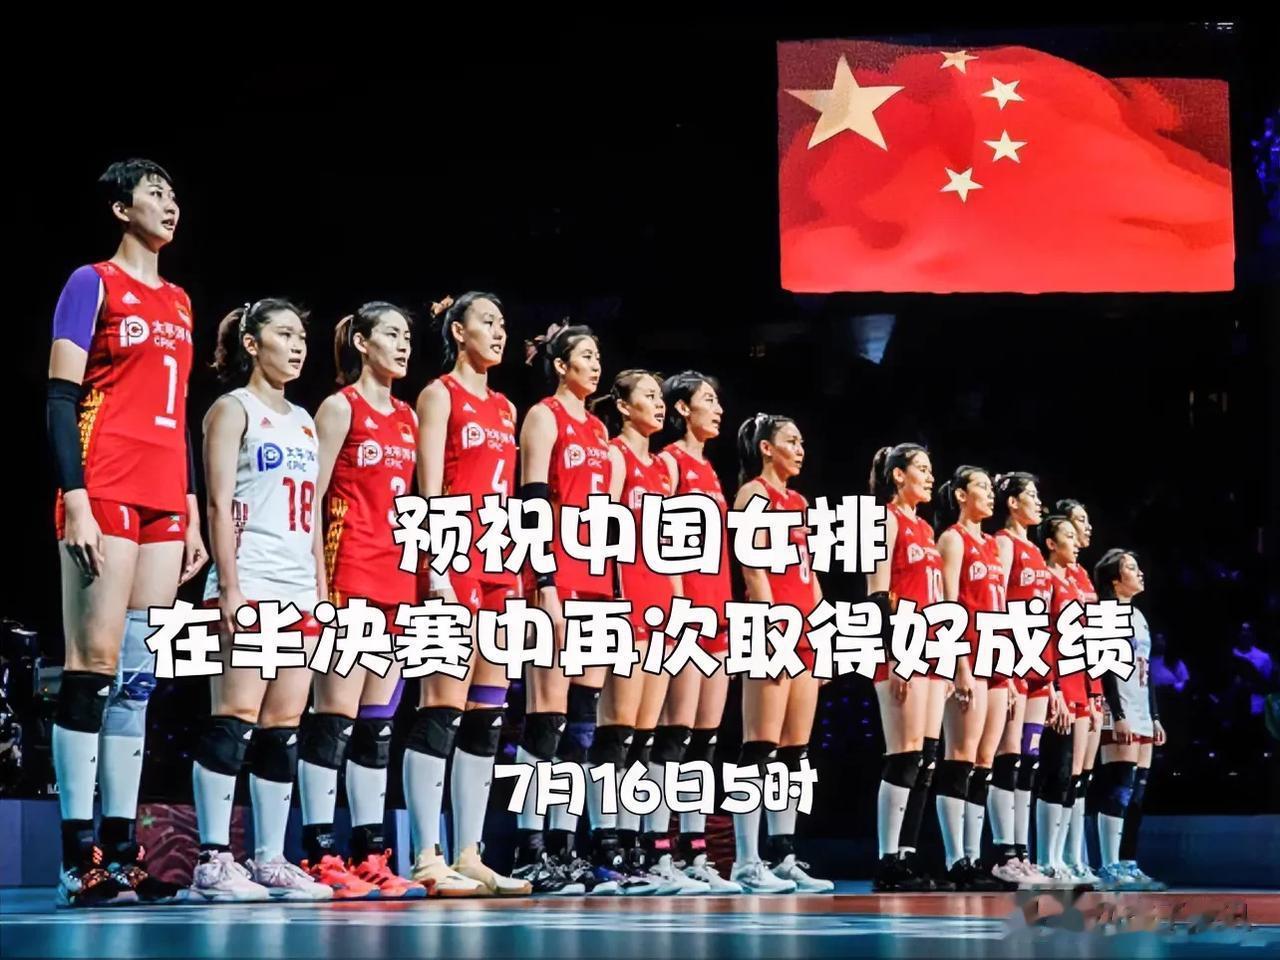 预祝中国女排在世联赛半决赛中取得好成绩

         今天凌晨，中国女排在